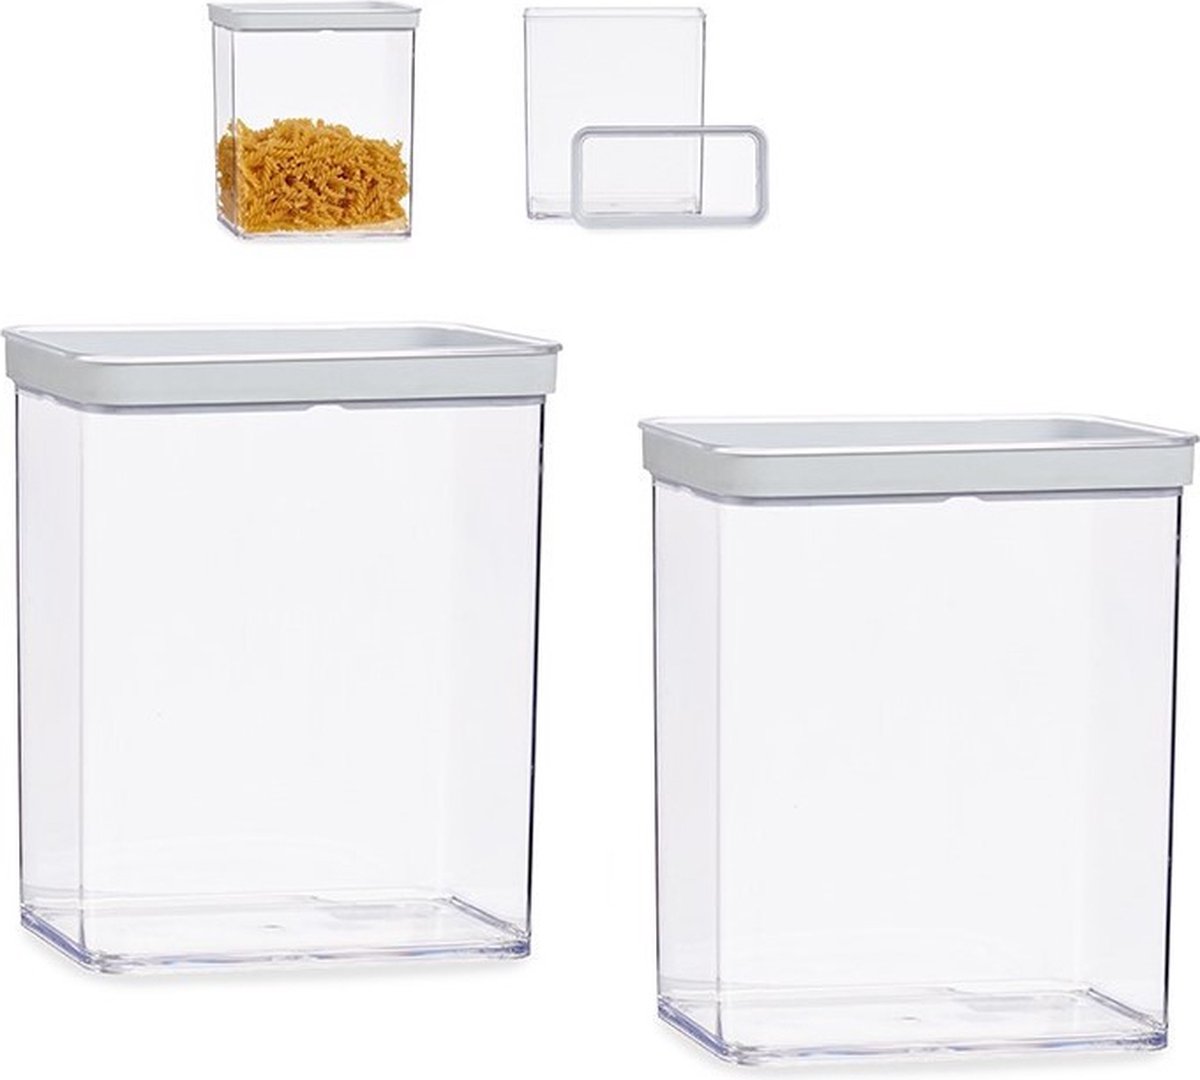 Set van 2x stuks keuken opslag voorraad bakjes transparant met deksel van 3.3 liter - Formaat 21 x 10 x 23 cm - Voorraadpotten